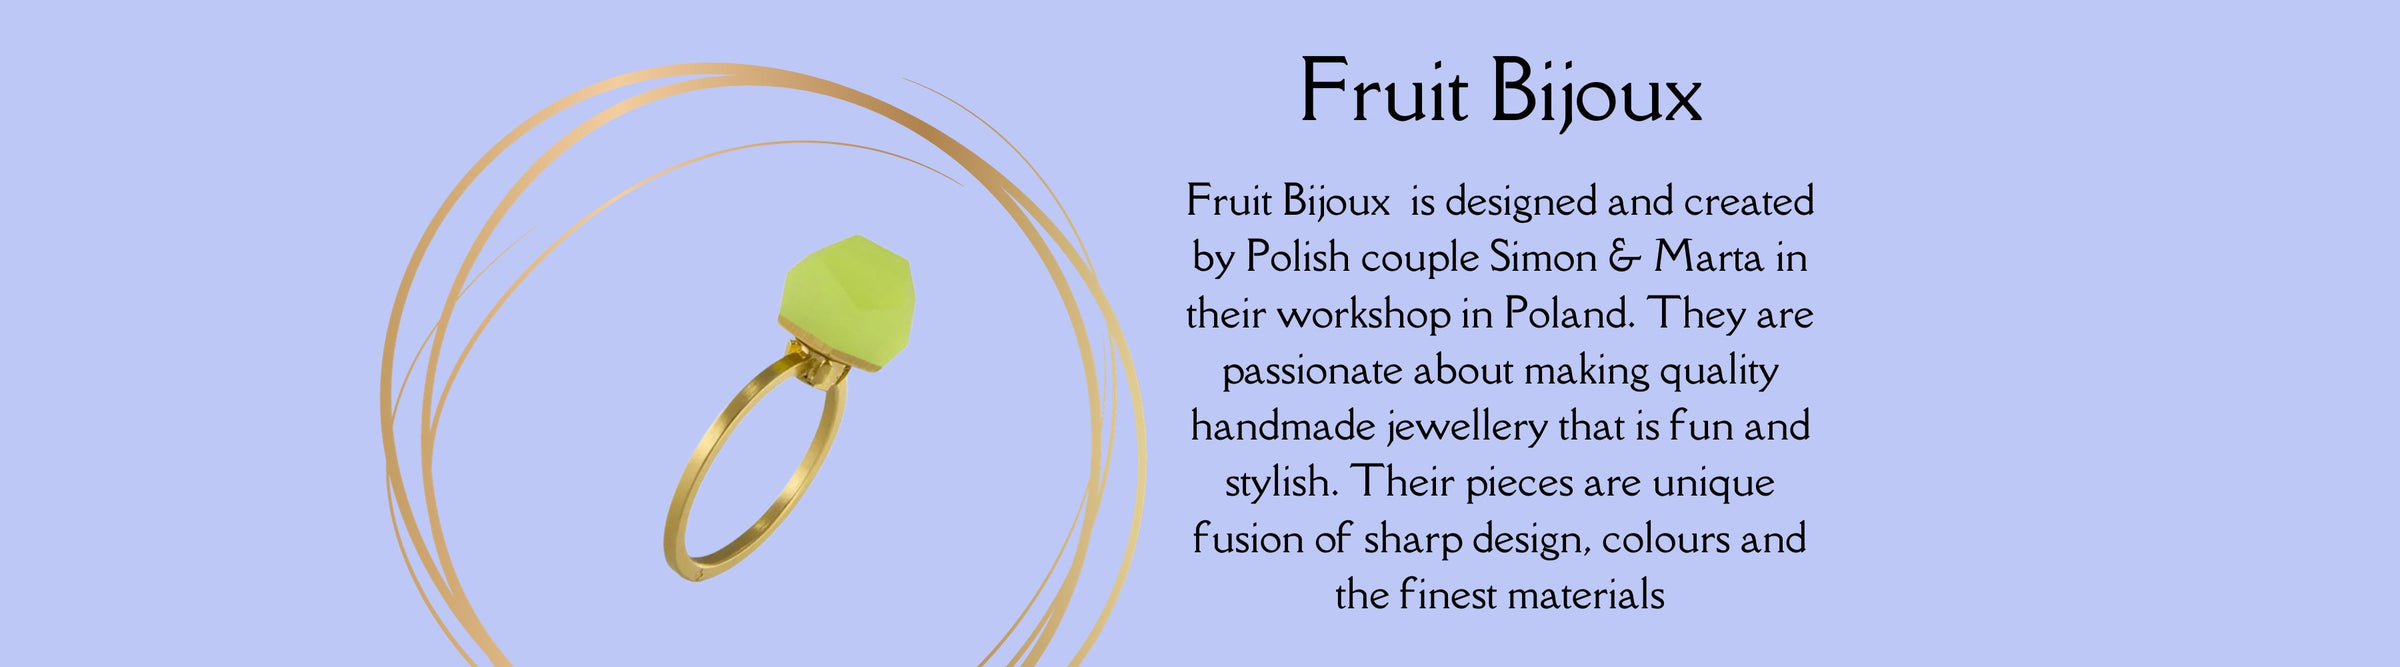 Fruit Bijoux